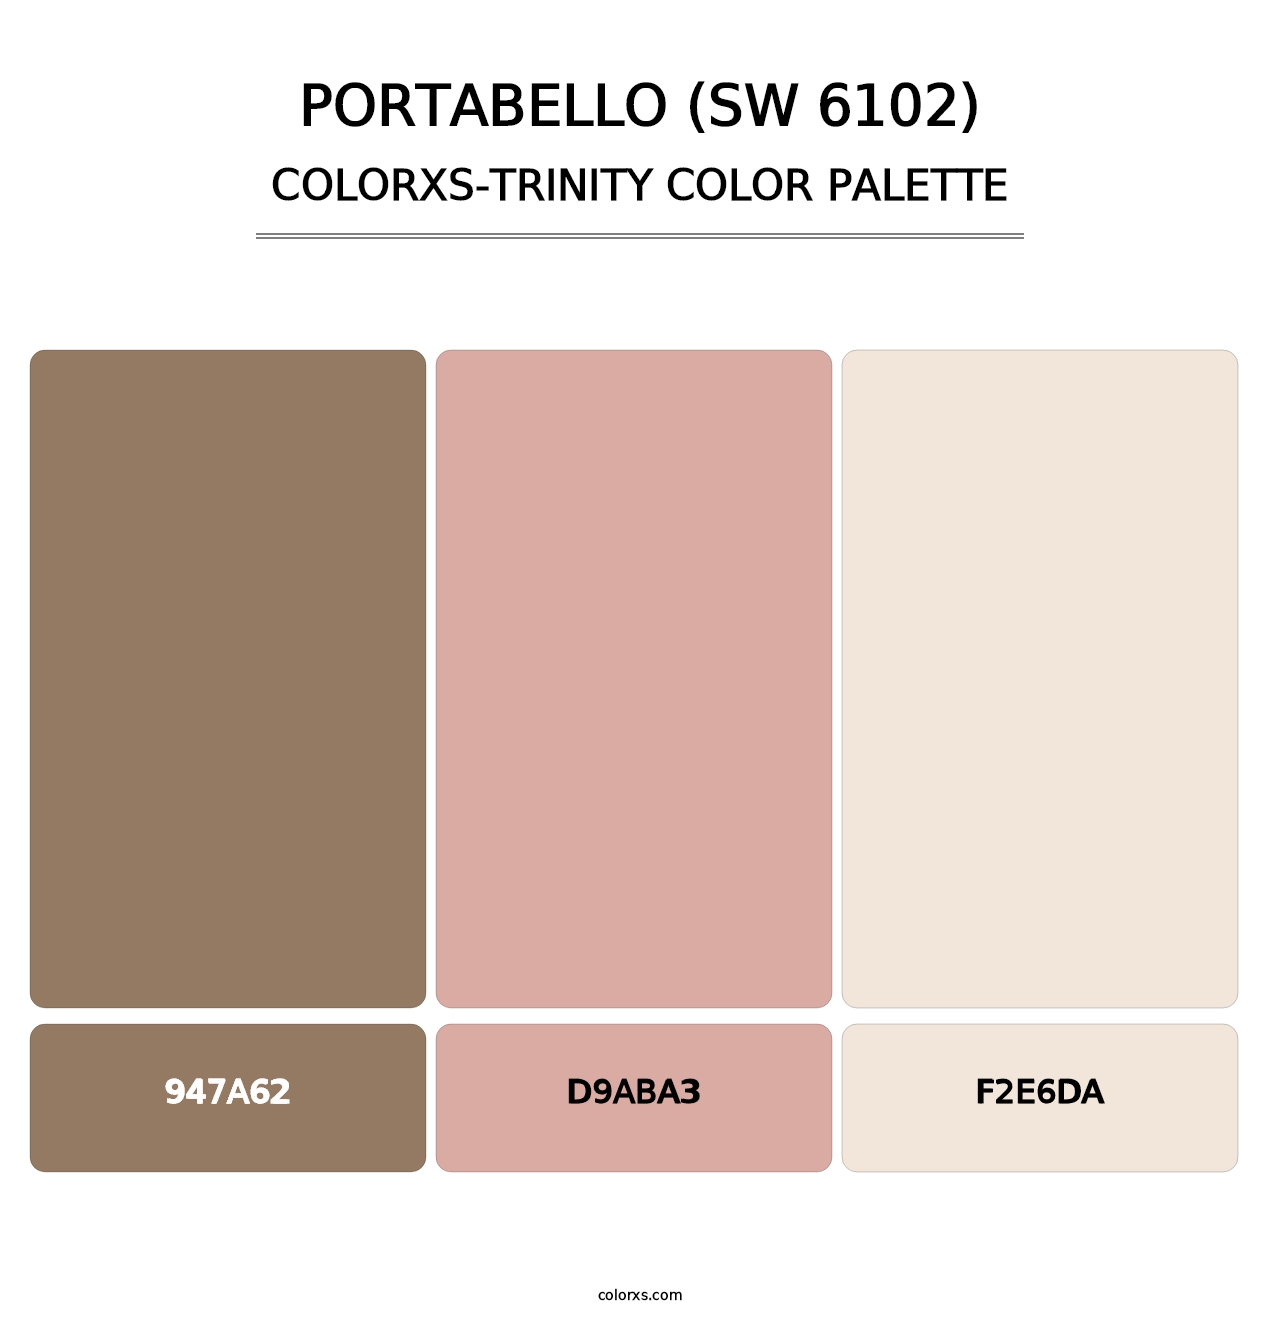 Portabello (SW 6102) - Colorxs Trinity Palette